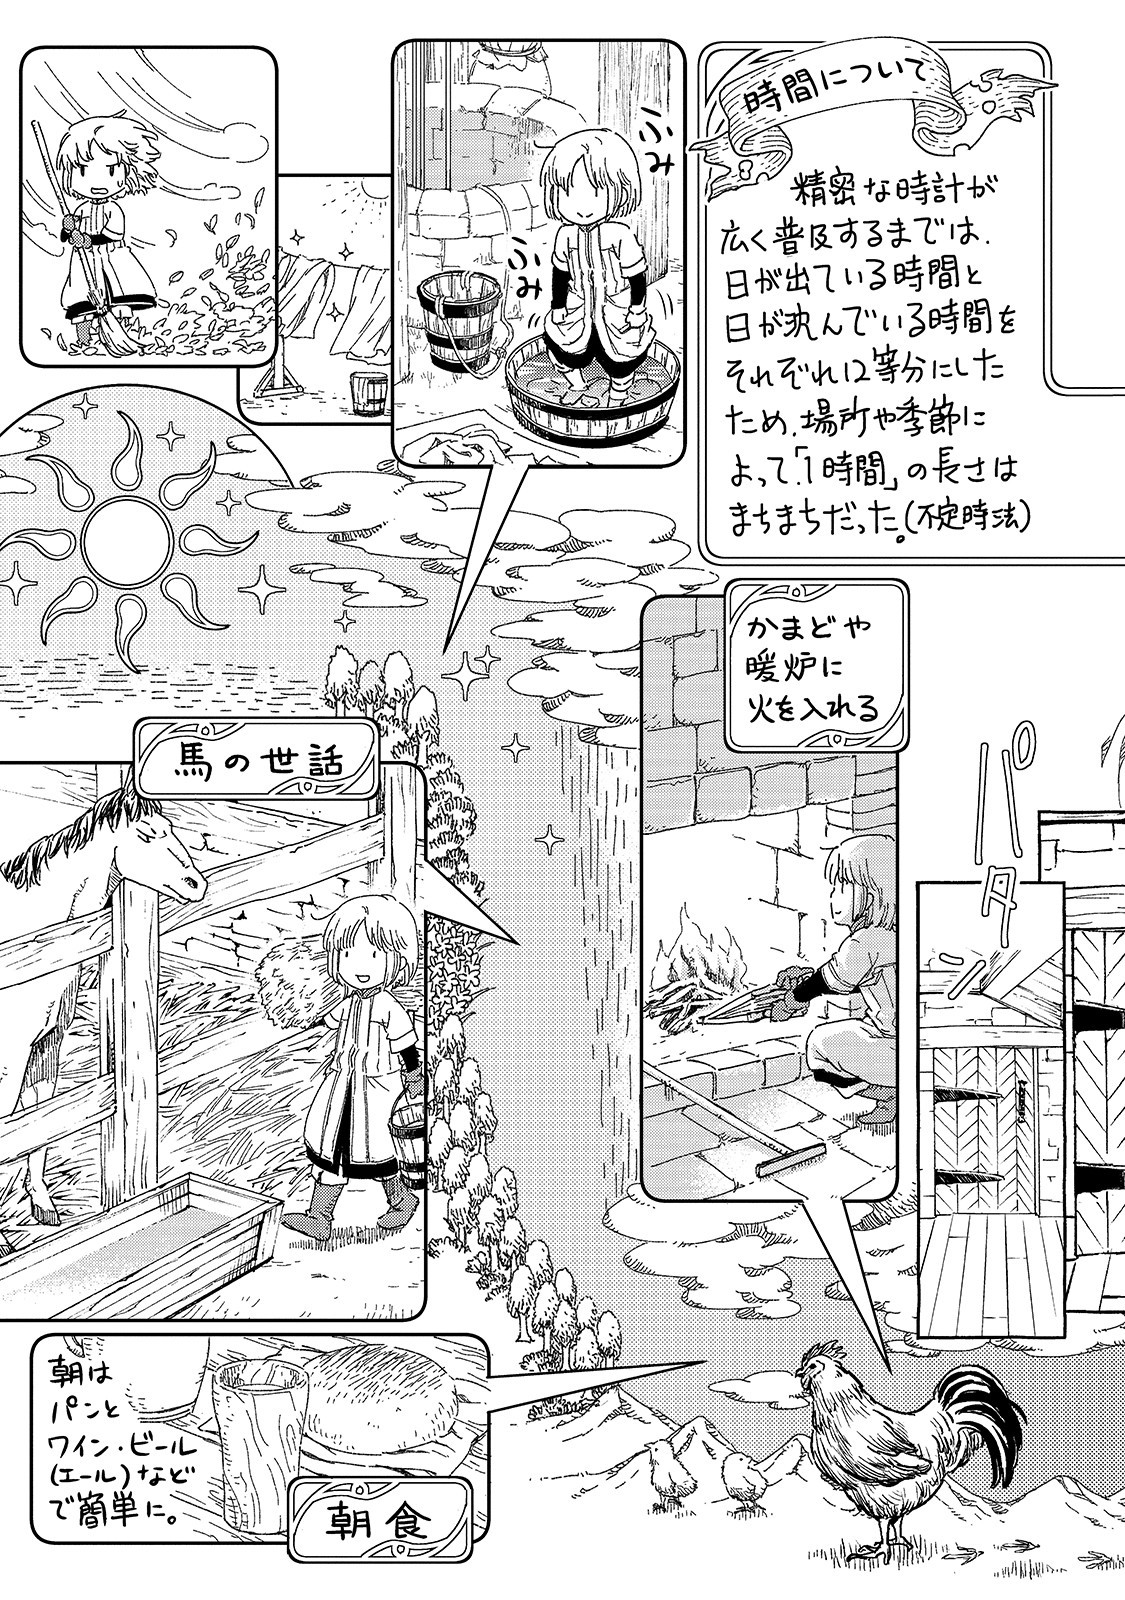 Kishitan wa Jouheki no Naka ni Hanahiraku - Chapter 14.5 - Page 2